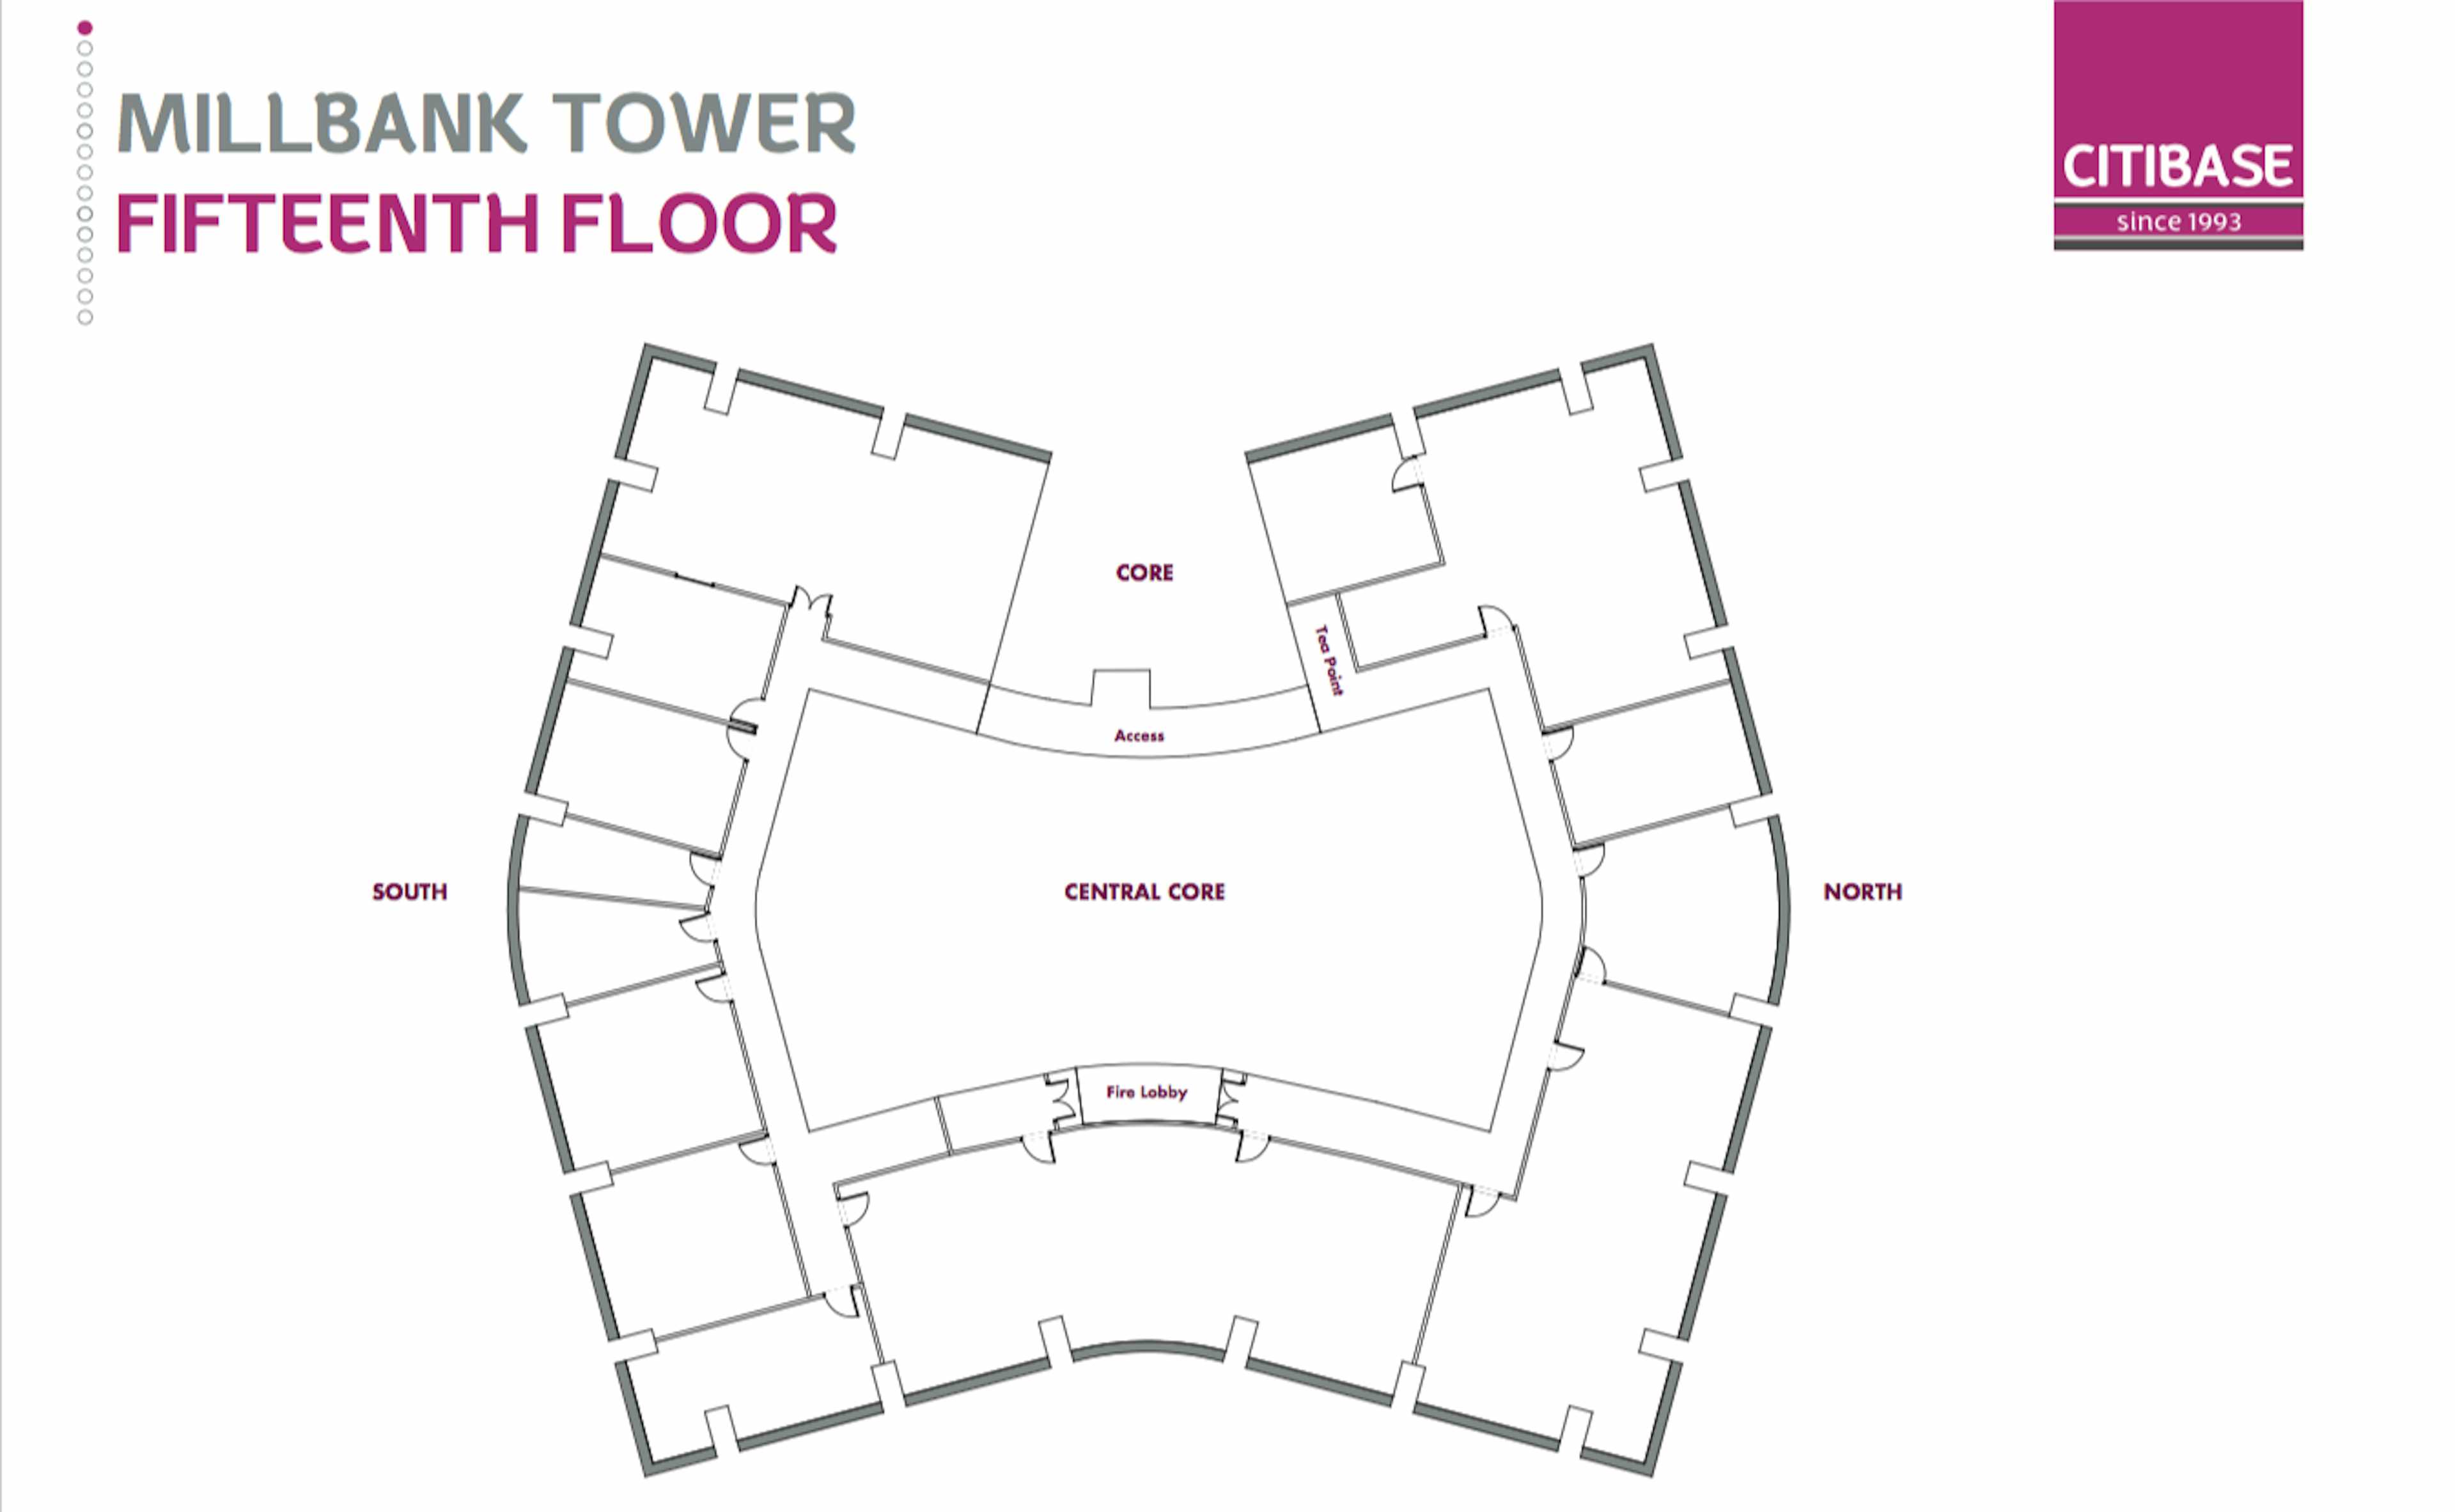 Floor Plan of Fifteenth Floor